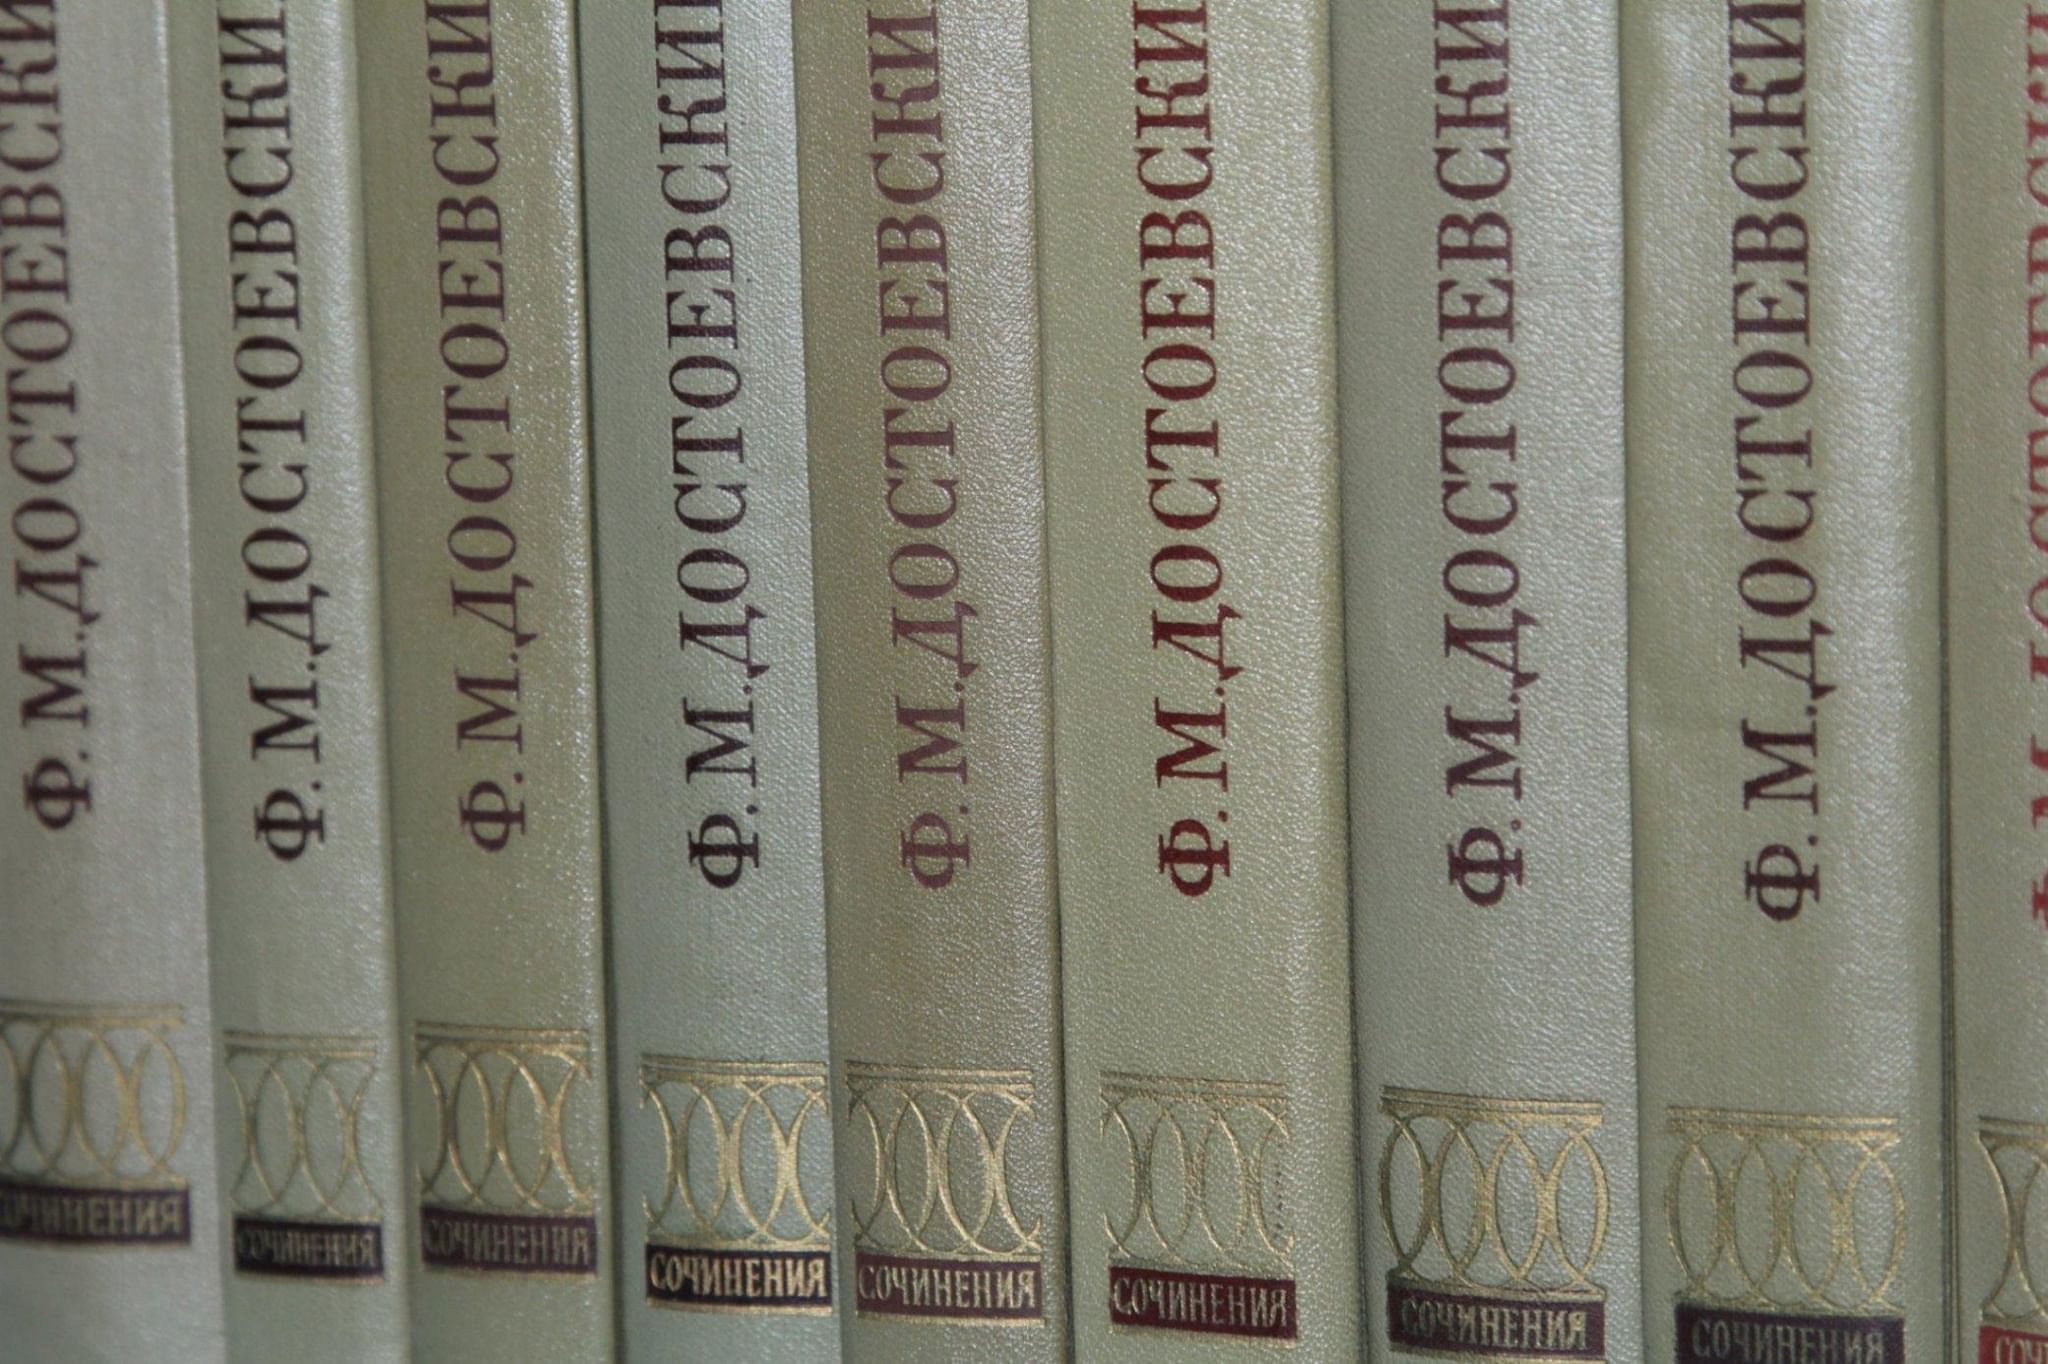 Собрание сочинений Достоевского 30 томов